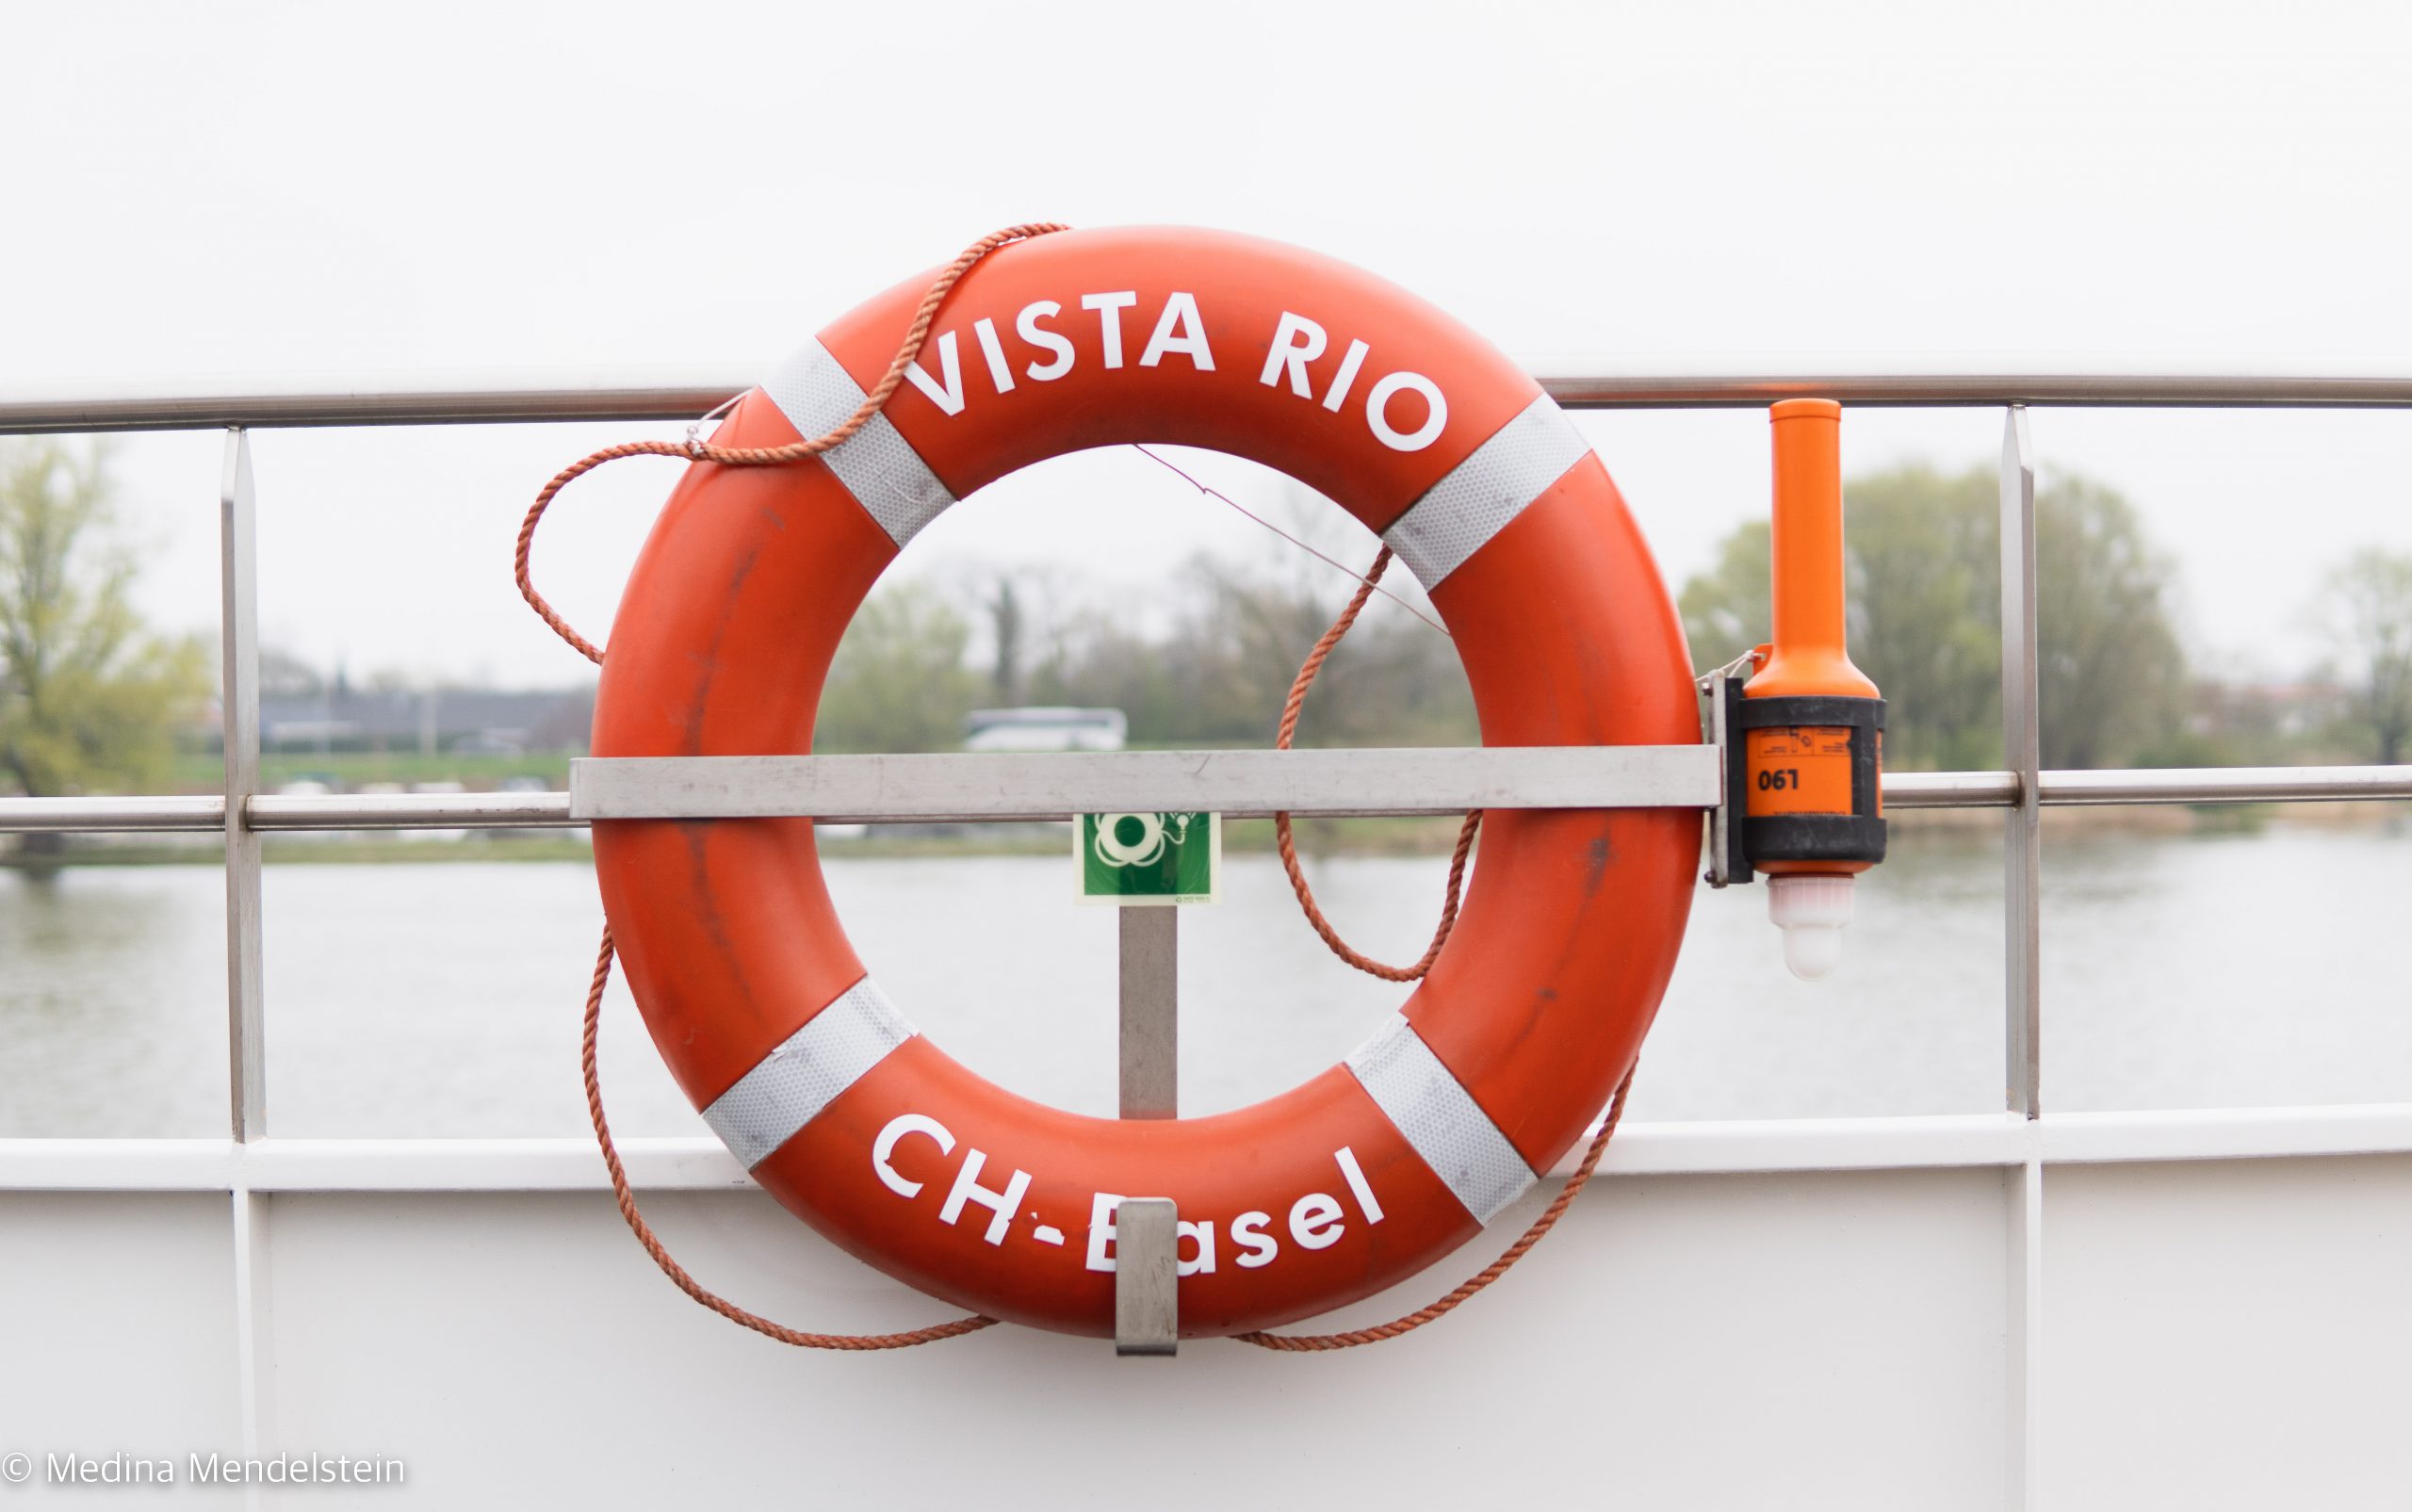 Rettungsring der Vista Rio, Flusskreuzfahrtschiff. An der Reeling befestigt.